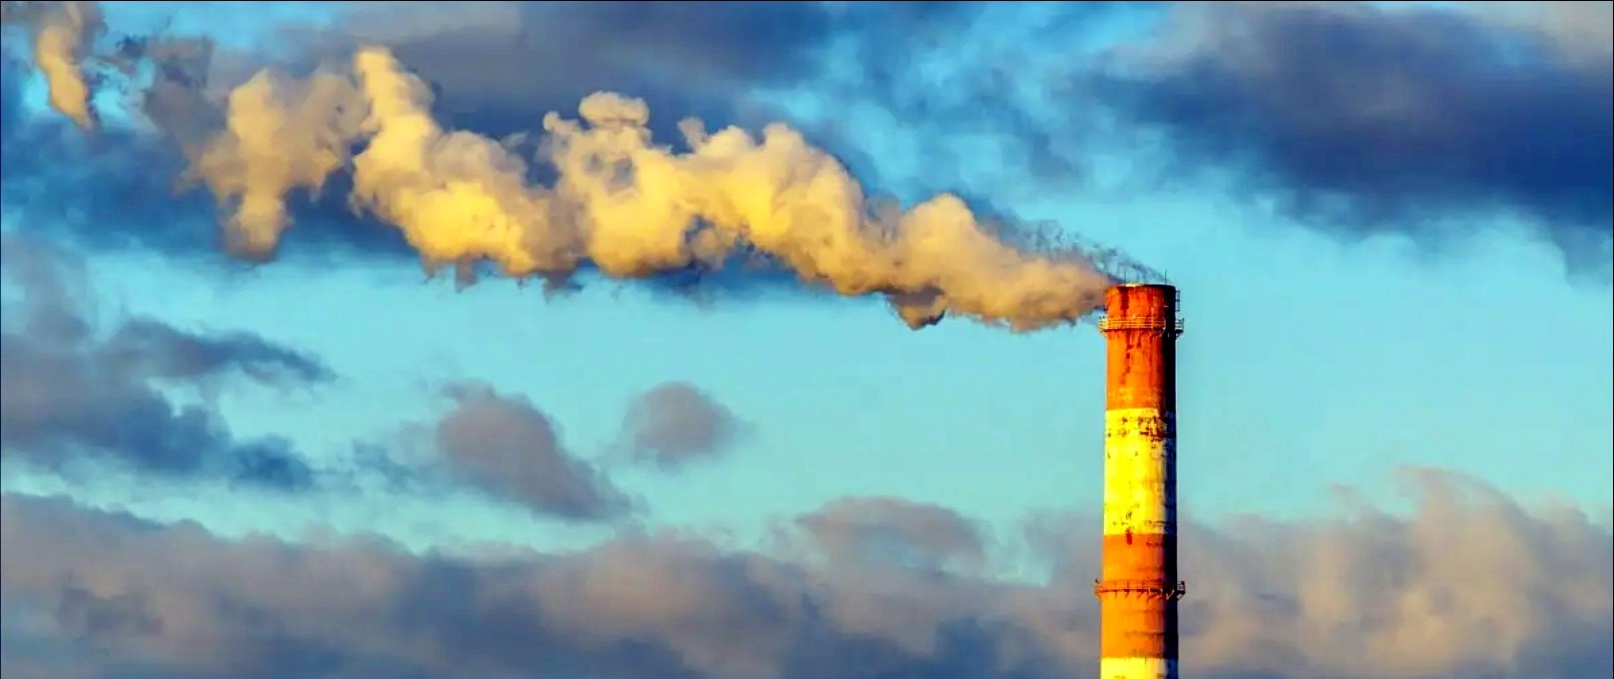 L’Arpav annuncia: nel 2021 aria meno inquinata in Veneto. La raccolta rifiuti cresce e cala il fabbisogno di discariche